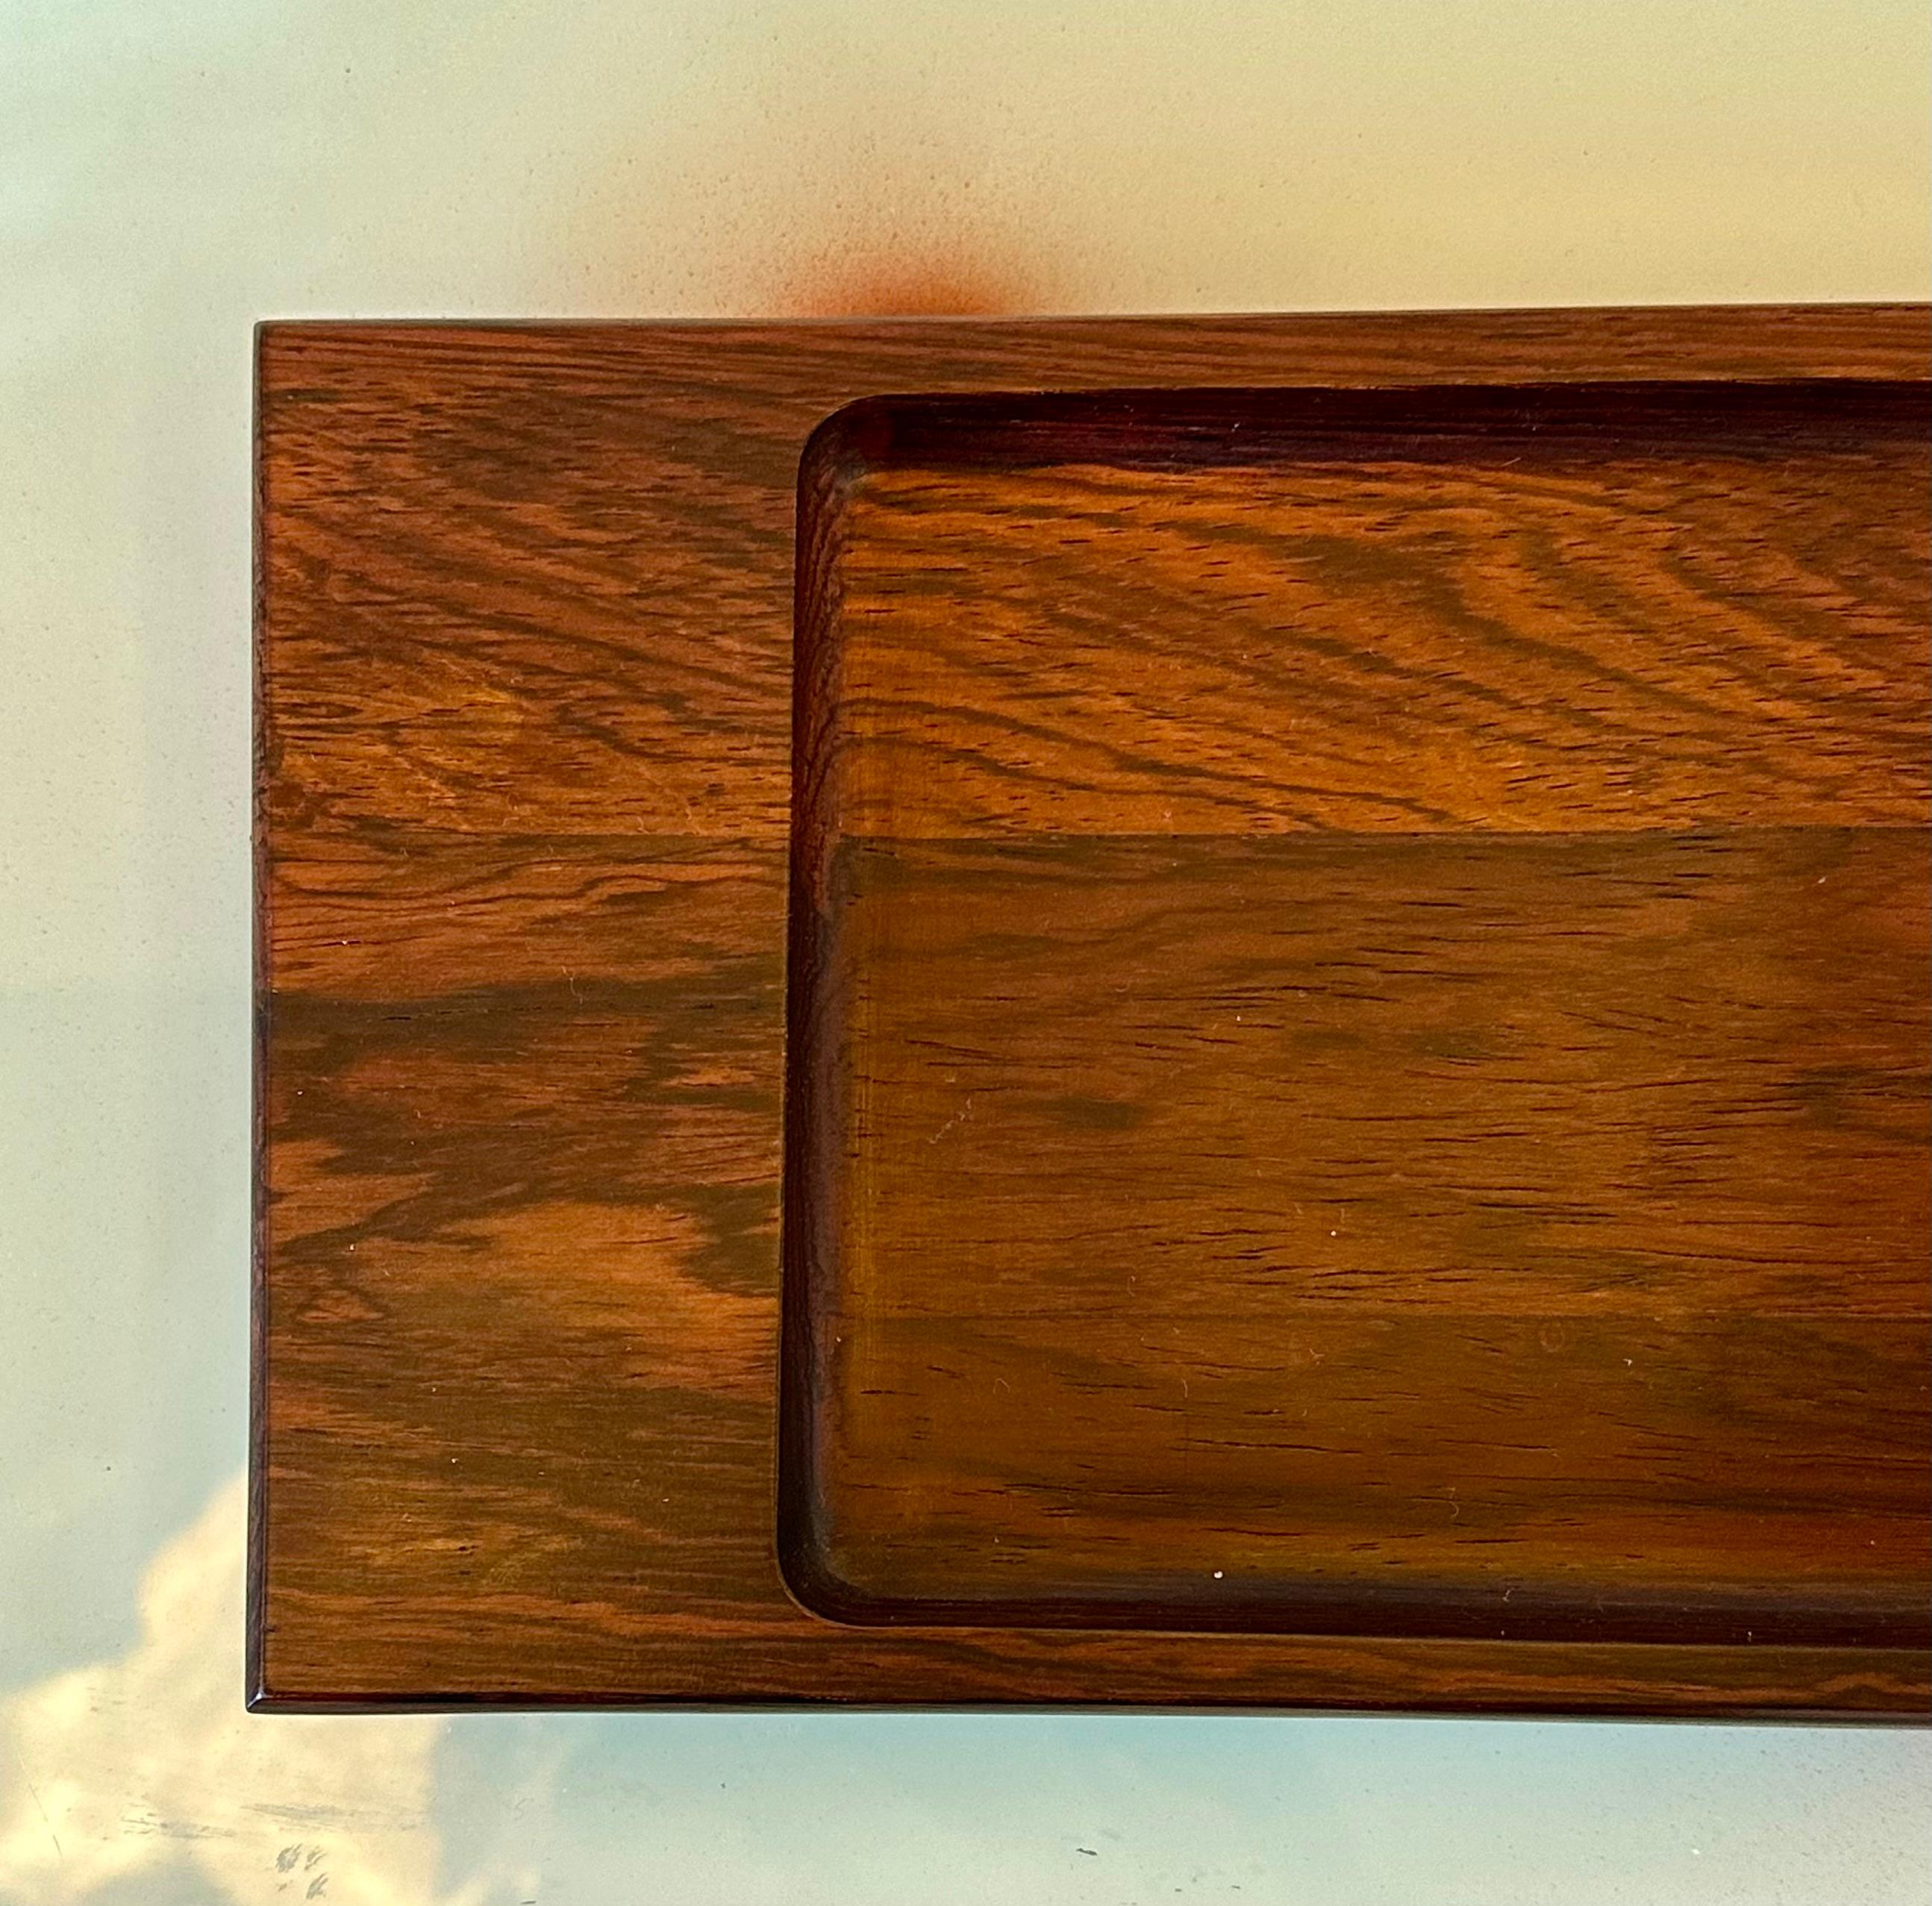 Dieses rechteckige Tablett des Modells 304 von Jean Gillon stammt aus der Zeit um 1960. Die aus Massivholz gefertigte Platte hat die Maße 2 x 35 x 12 Zentimeter. Die Authentizität dieser Kreation wird durch das Vorhandensein des Wood Art 1/304